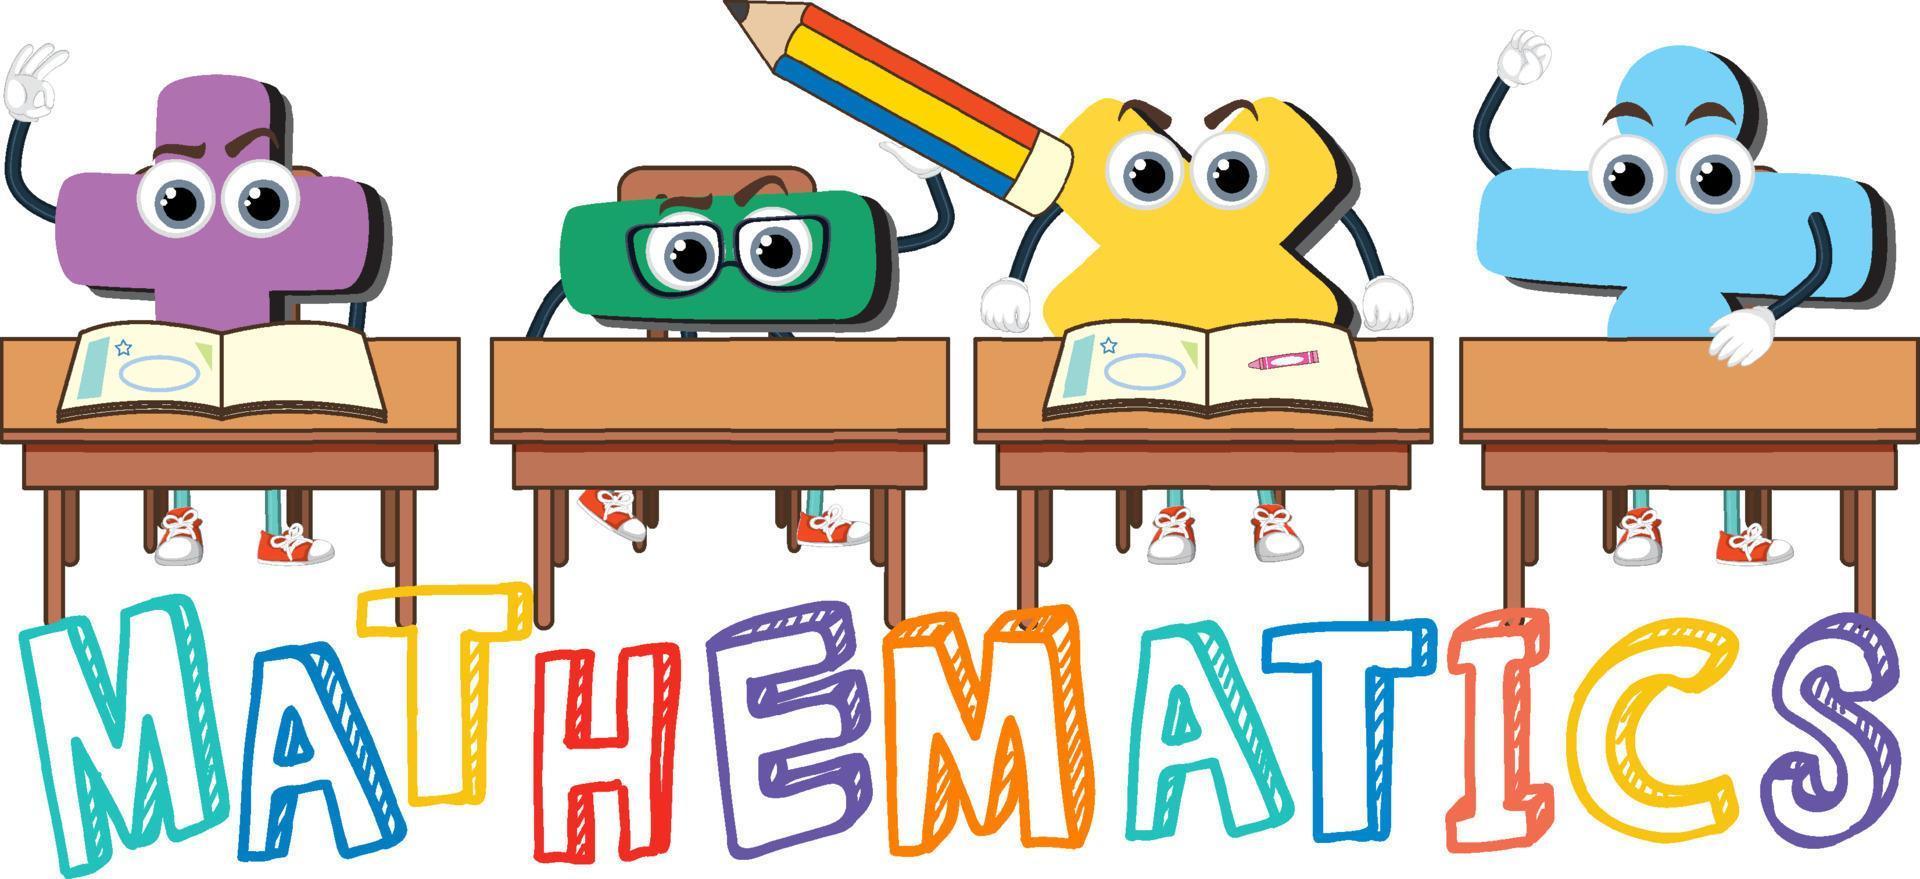 logotipo de la palabra matemática en estilo de dibujos animados vector